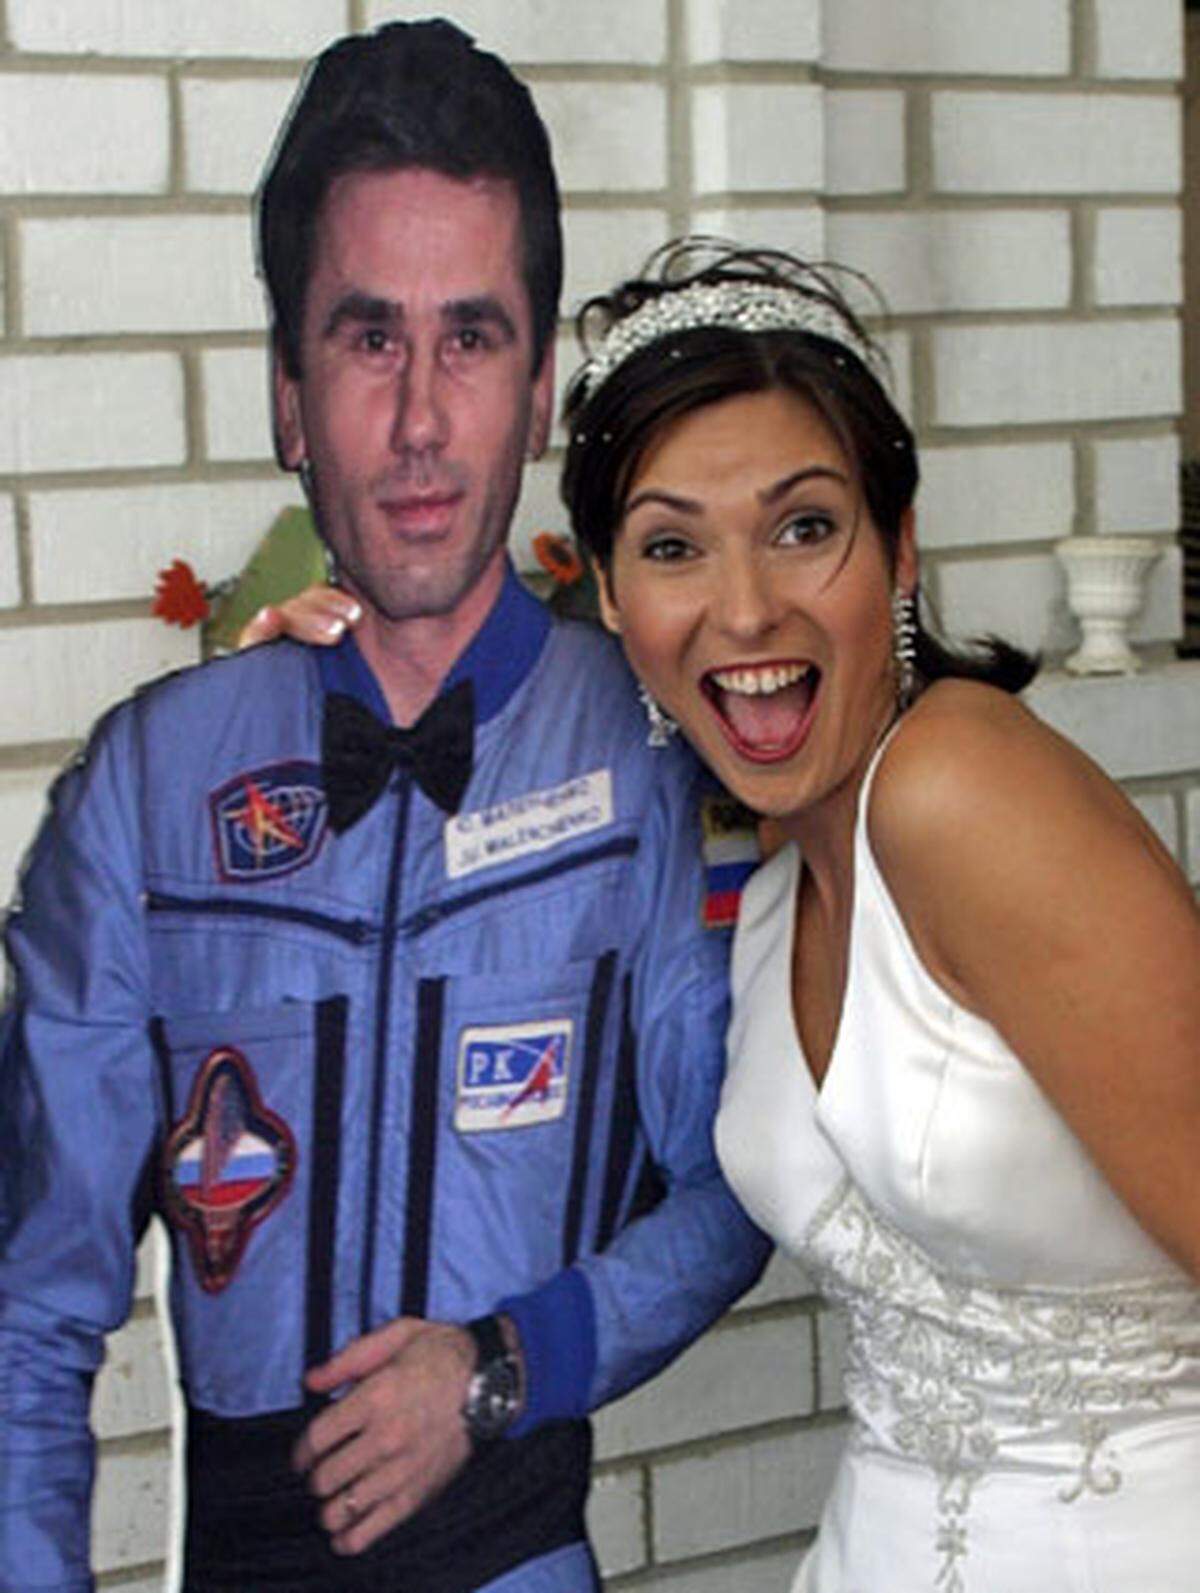 Mit Fernbeziehungen kennt sich Ekaterina Dmitriev aus Russland aus. Ihr Mann ist Astronaut bei der NASA und die Hochzeit erfolgte via Satellit. In Texas ist das kein Problem - nur eine Person des Brautpaares muss anwesend sein.